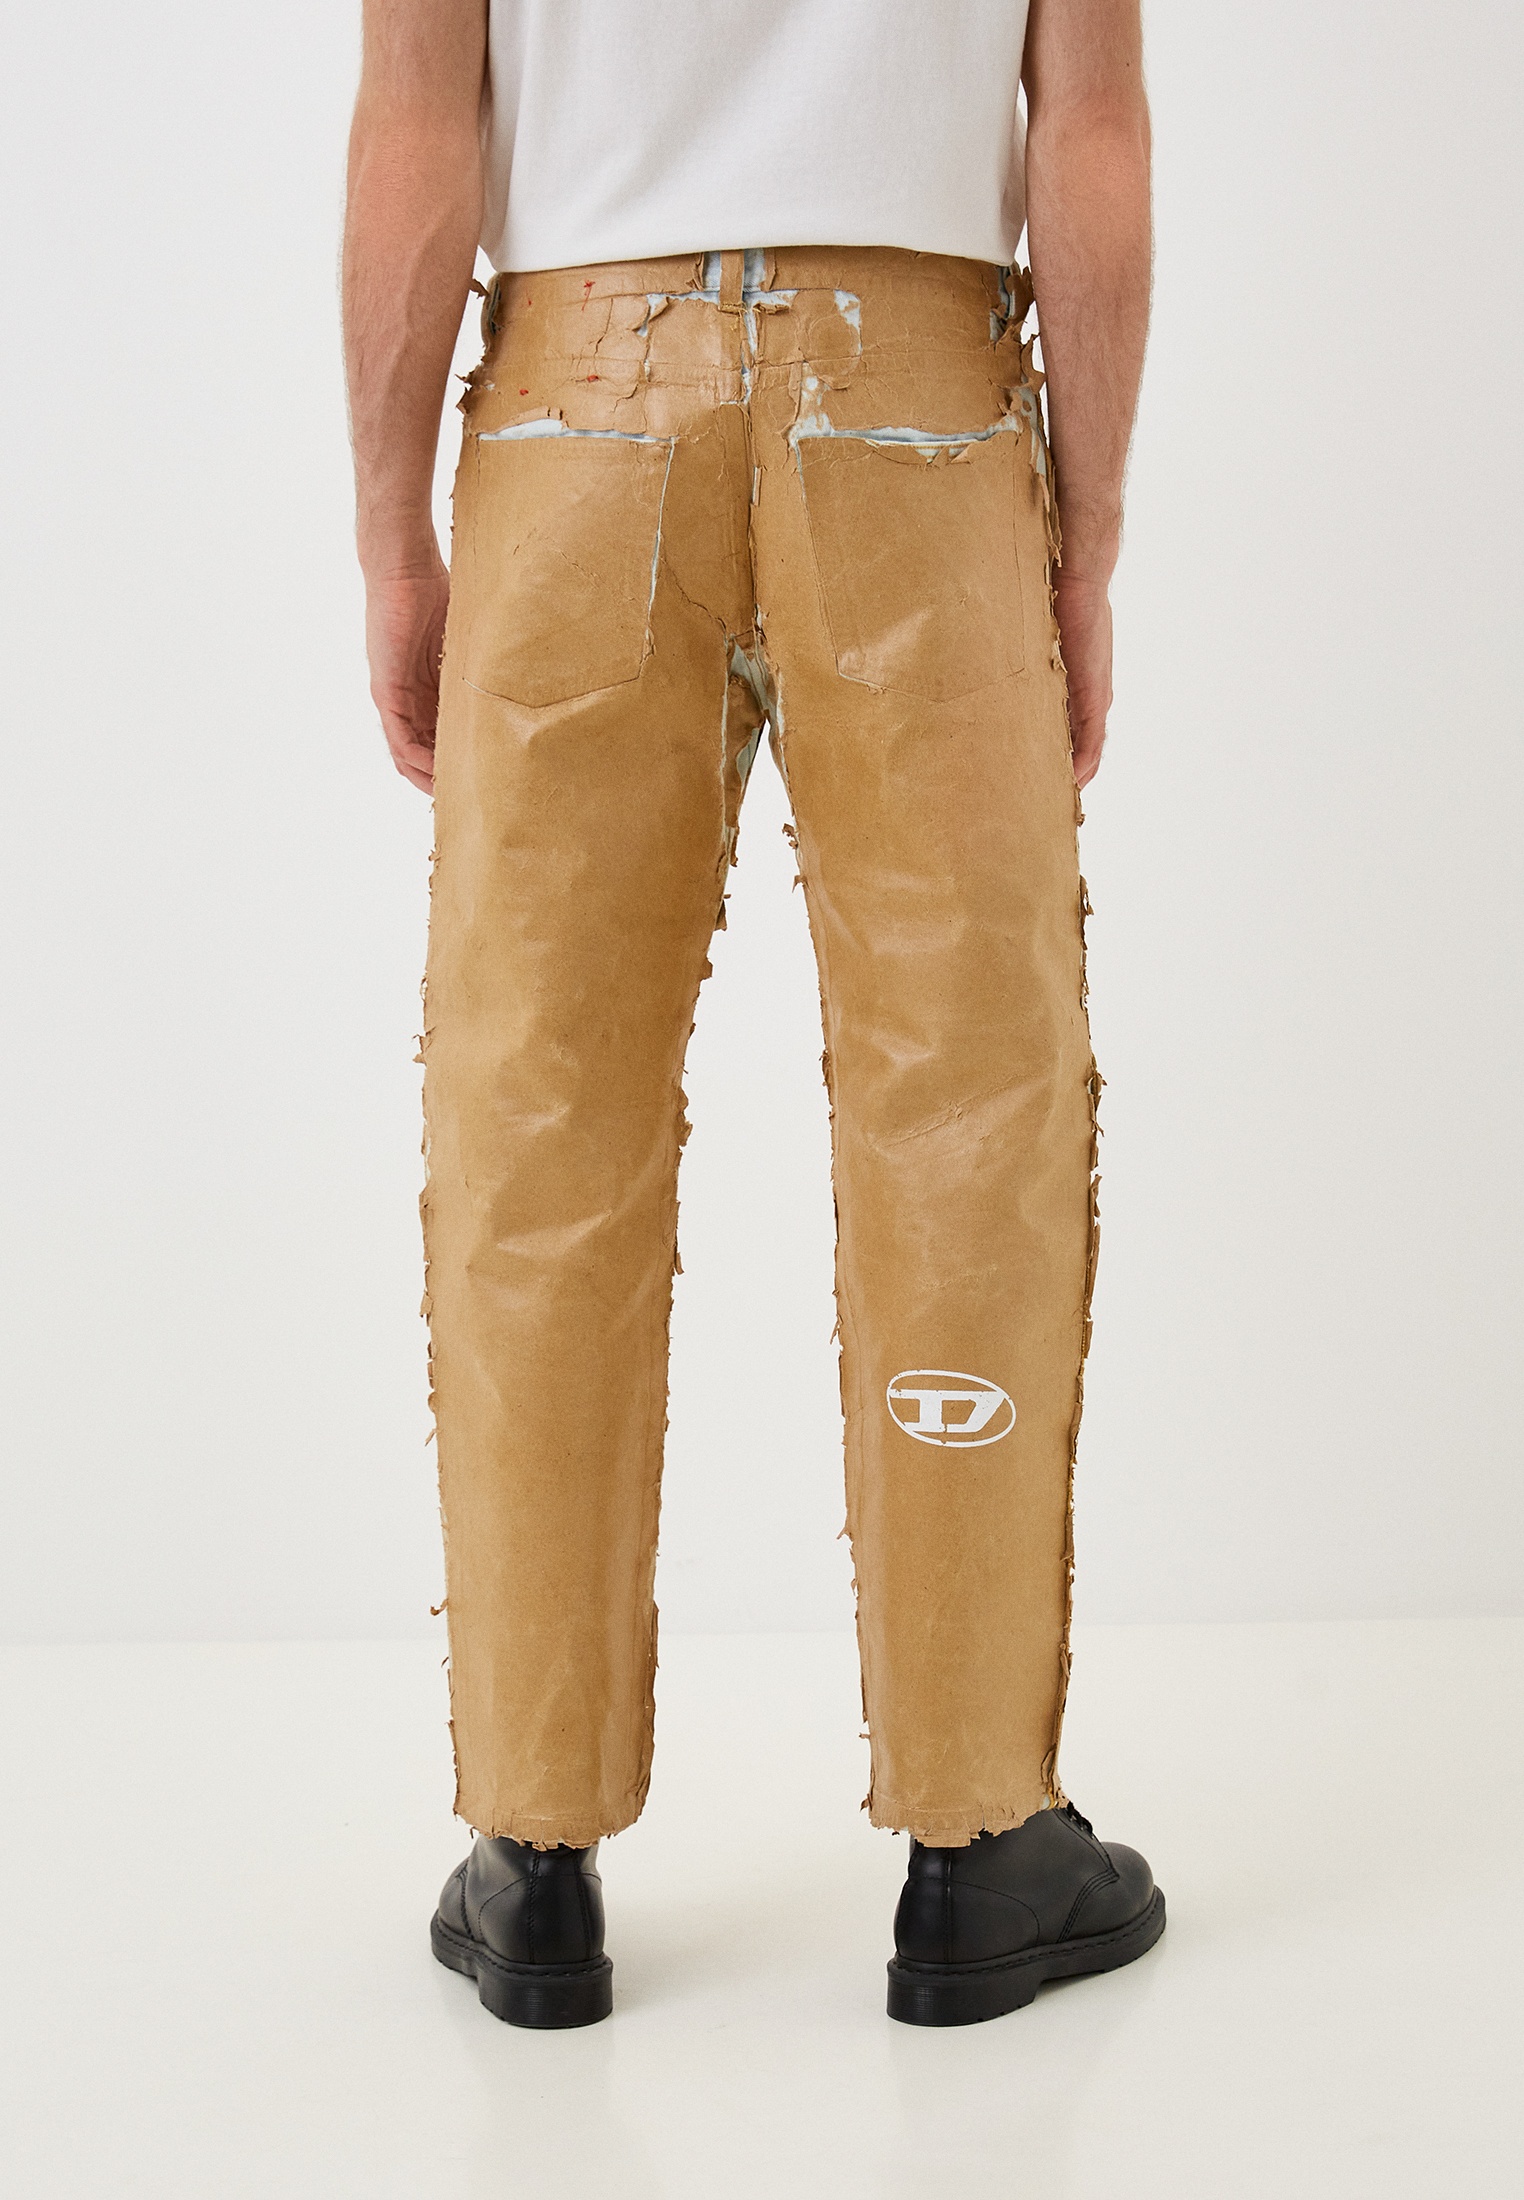 Мужские прямые джинсы Diesel (Дизель) A05959007B7: изображение 3